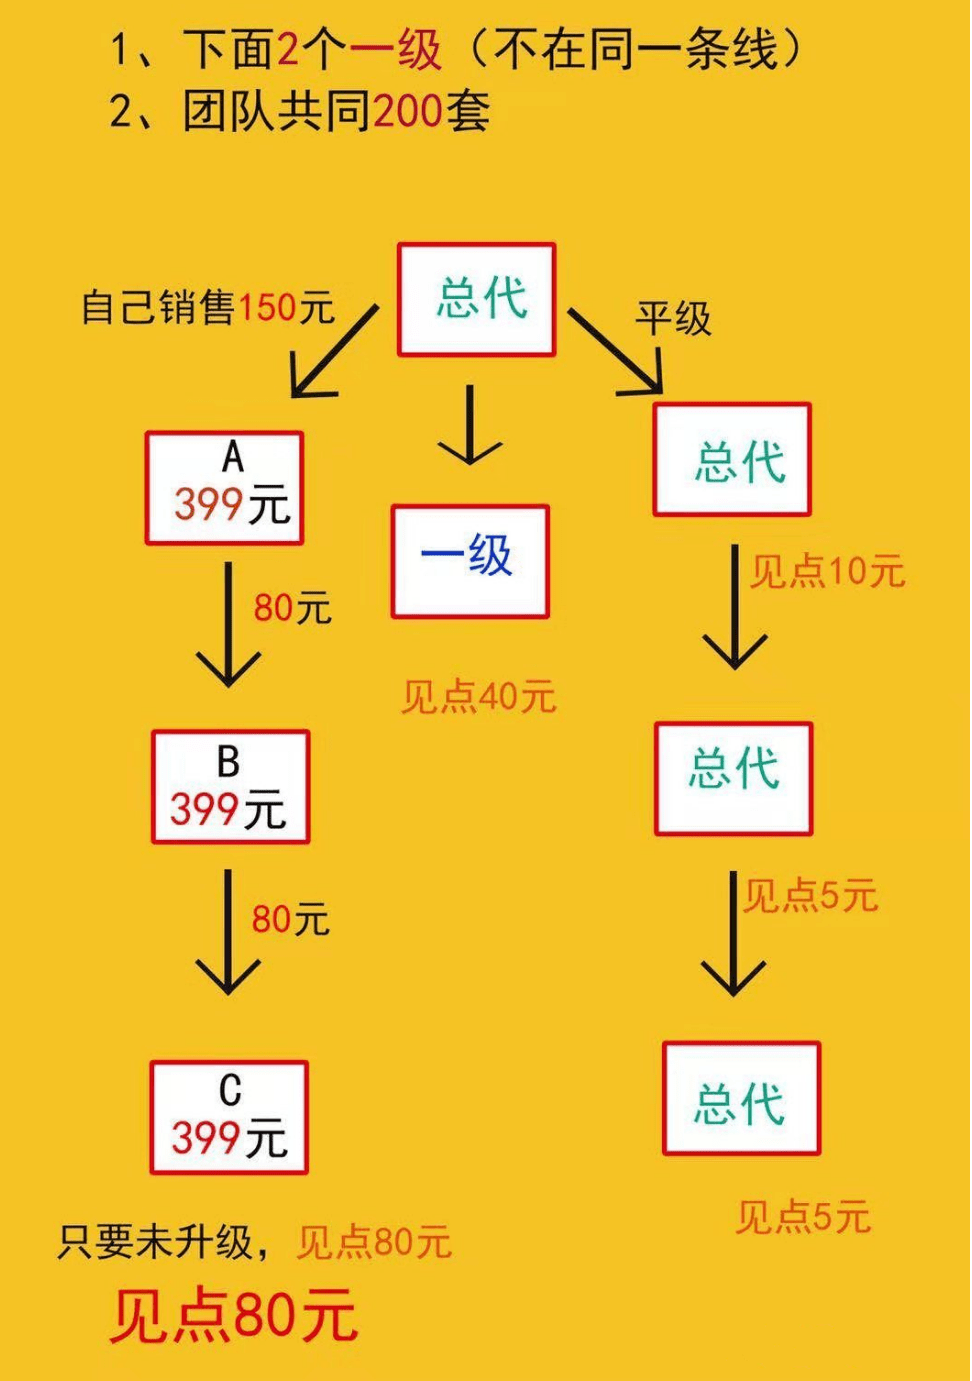 【查处】贵州省名宇内衣有限公司因涉嫌传销被强制罚没3300多万元